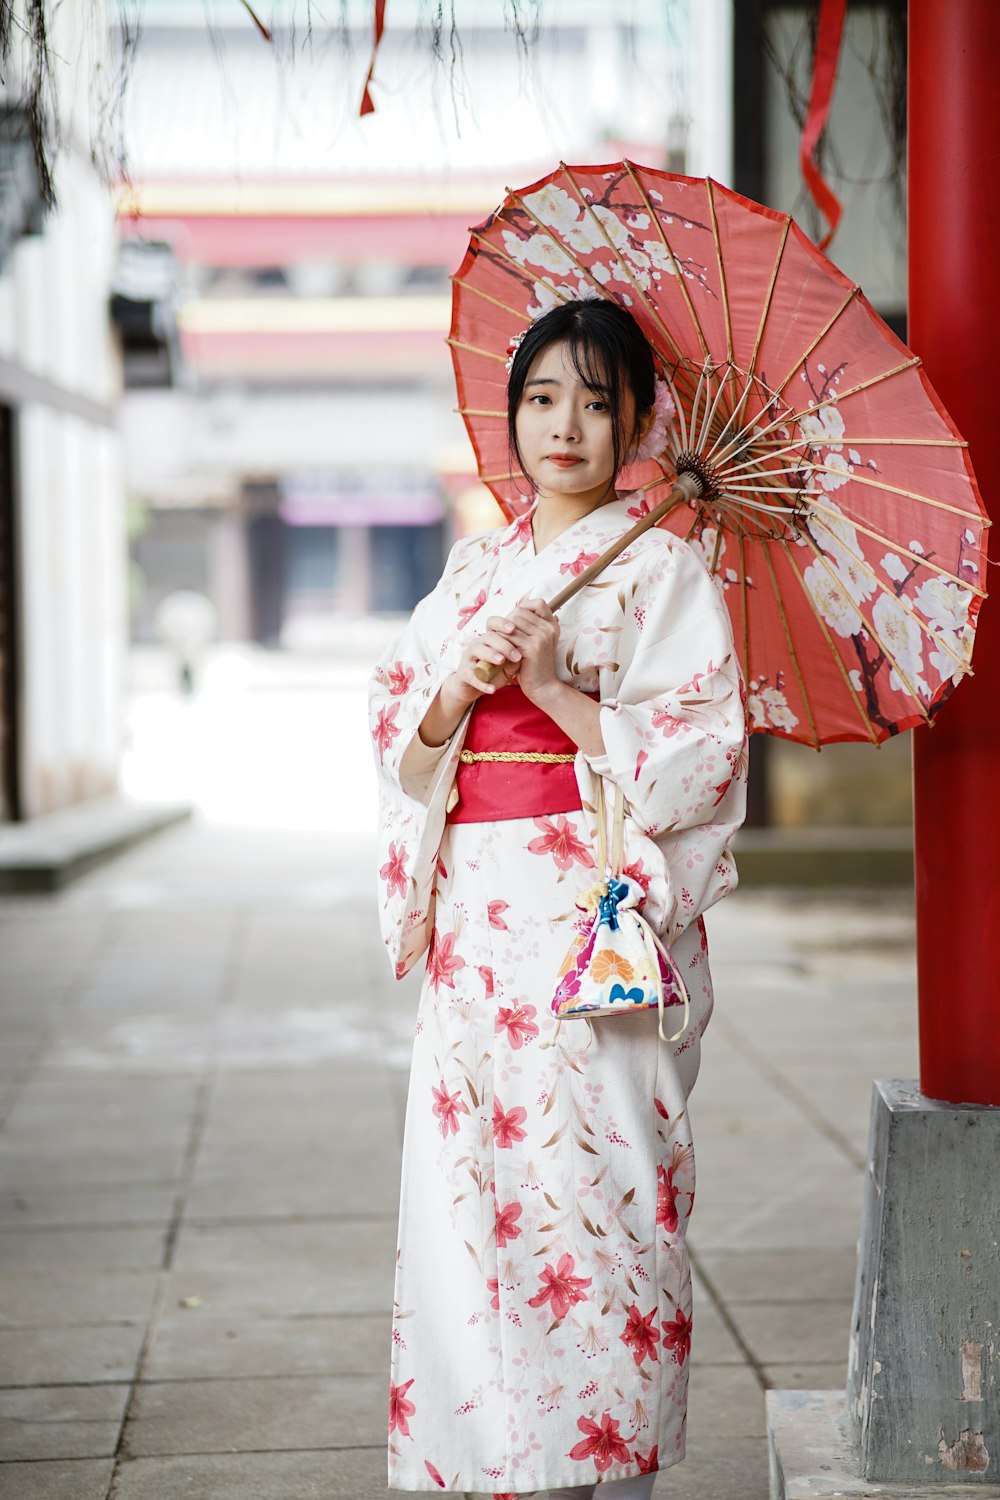 mulher no quimono branco e vermelho segurando o guarda-chuva